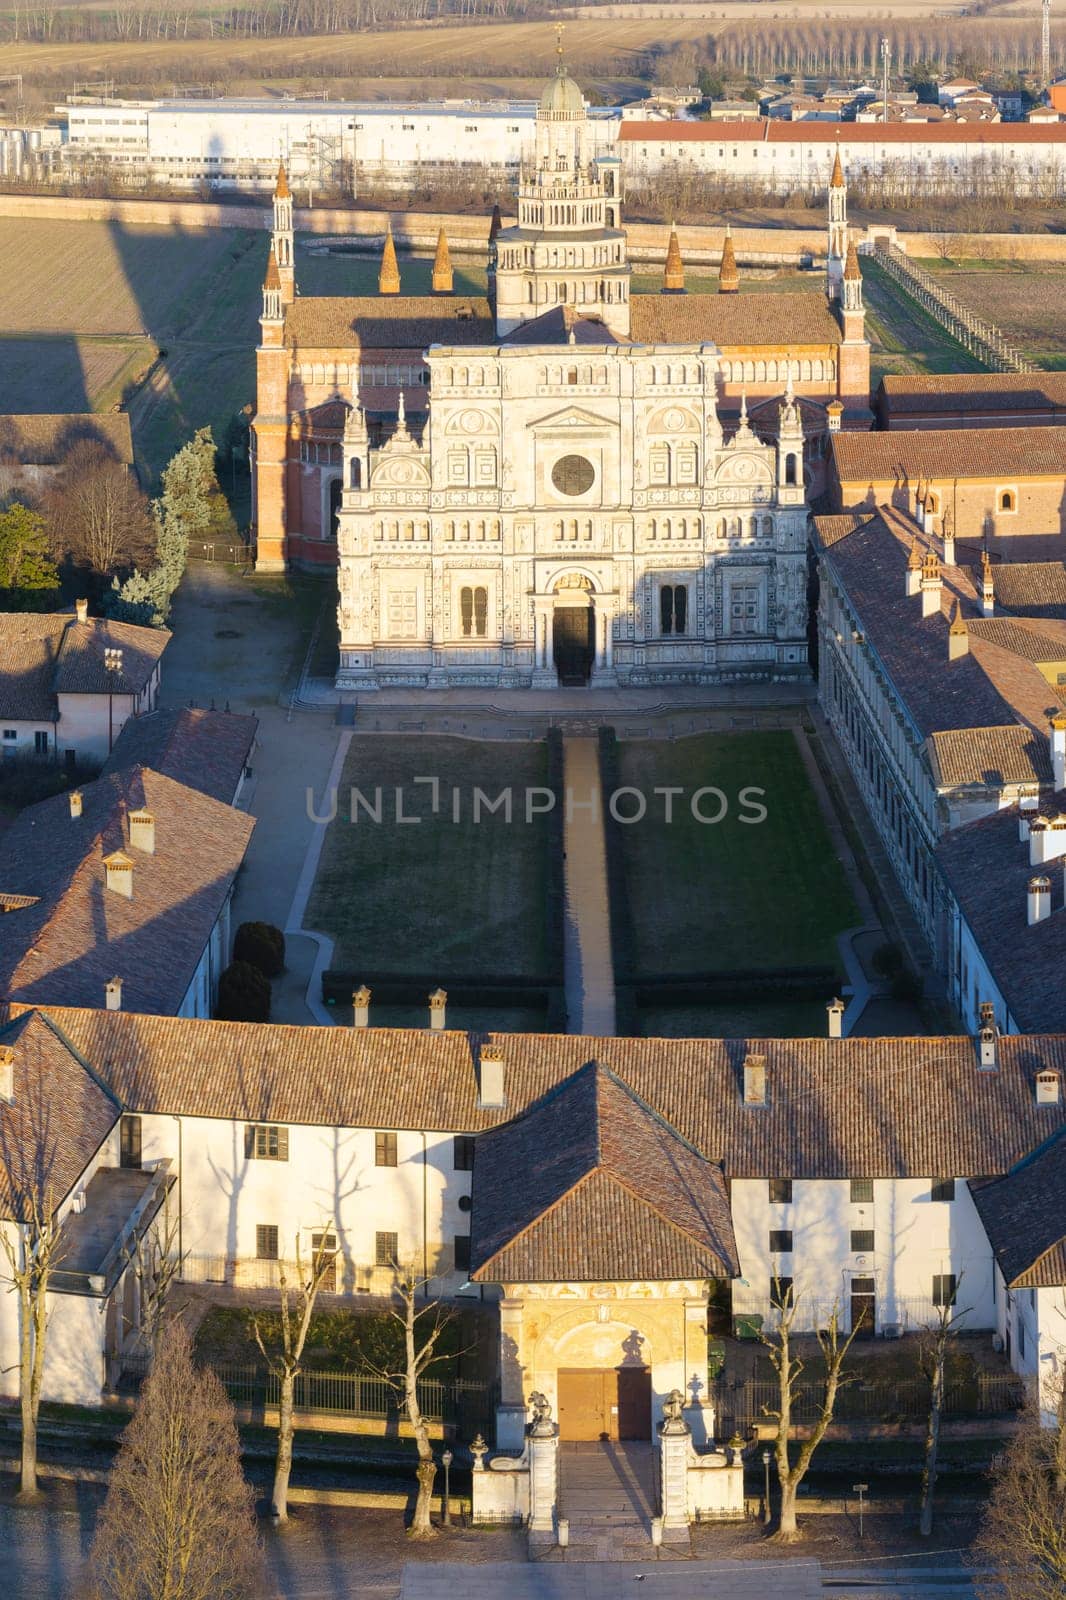 Drone shot over Certosa di Pavia monastery by Robertobinetti70